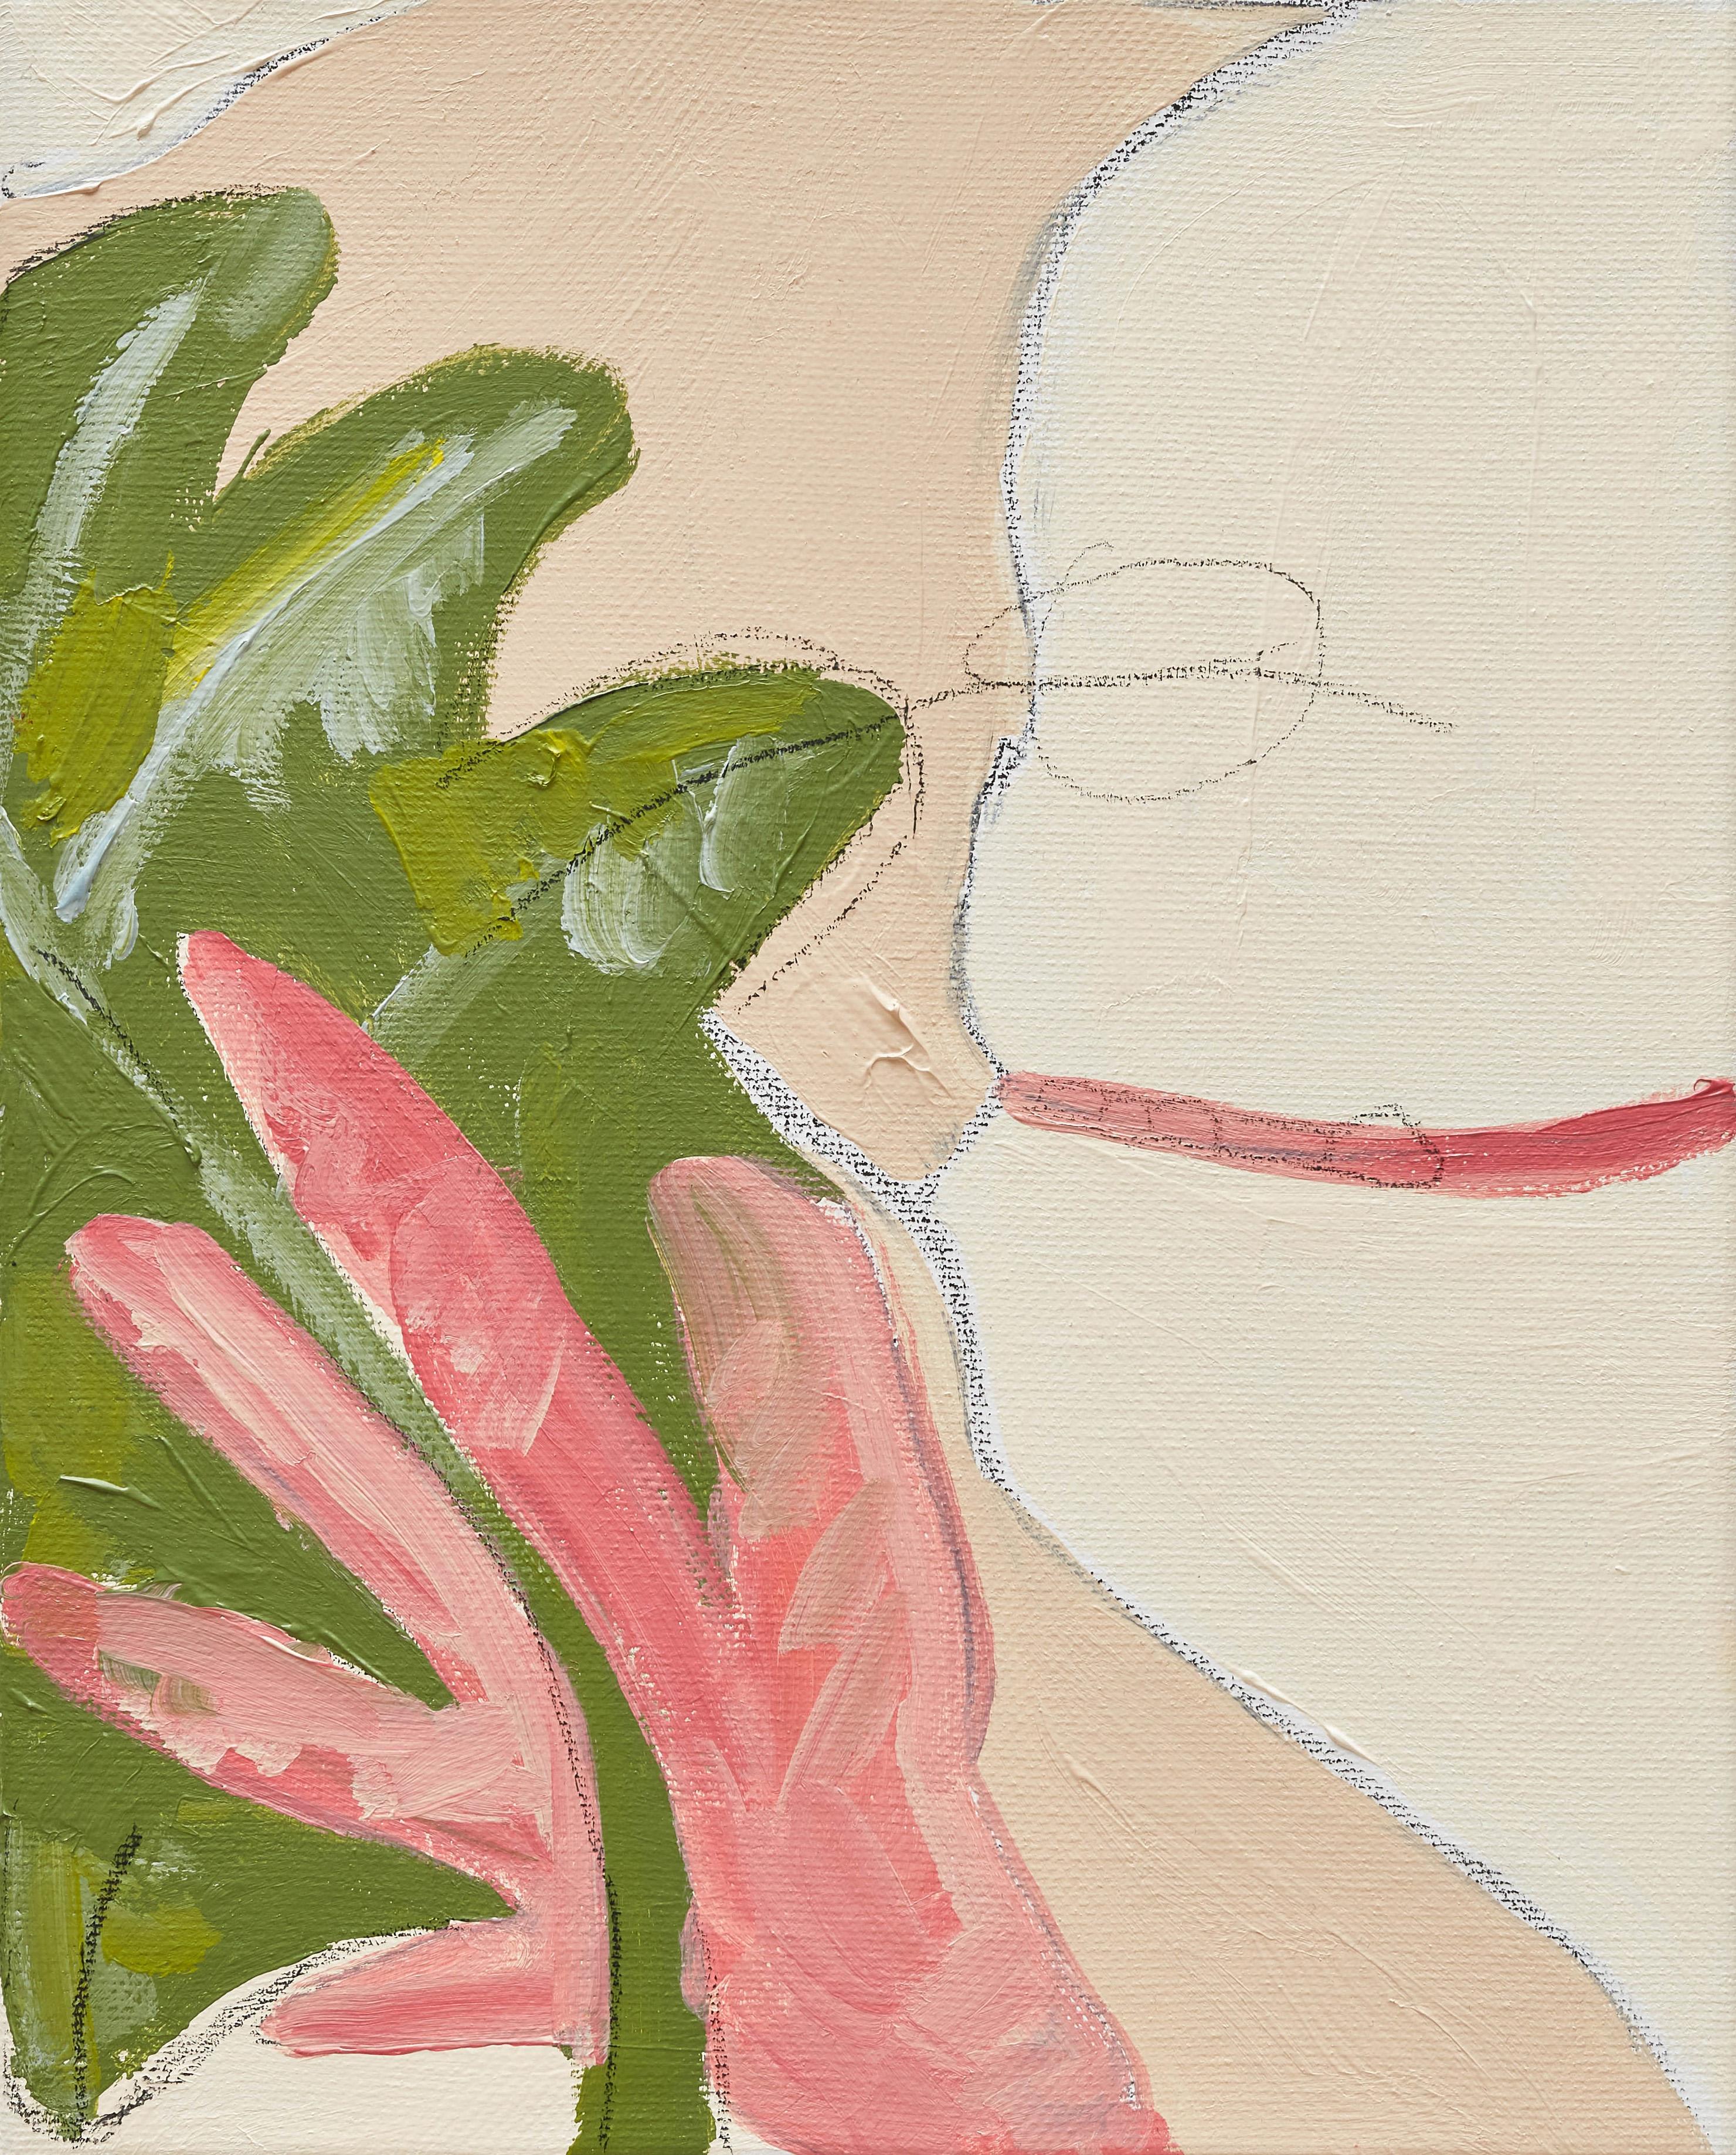 Abstract Painting Mel Reese - « Body Abstraction n° 19 », peinture abstraite contemporaine de corps crème et vert